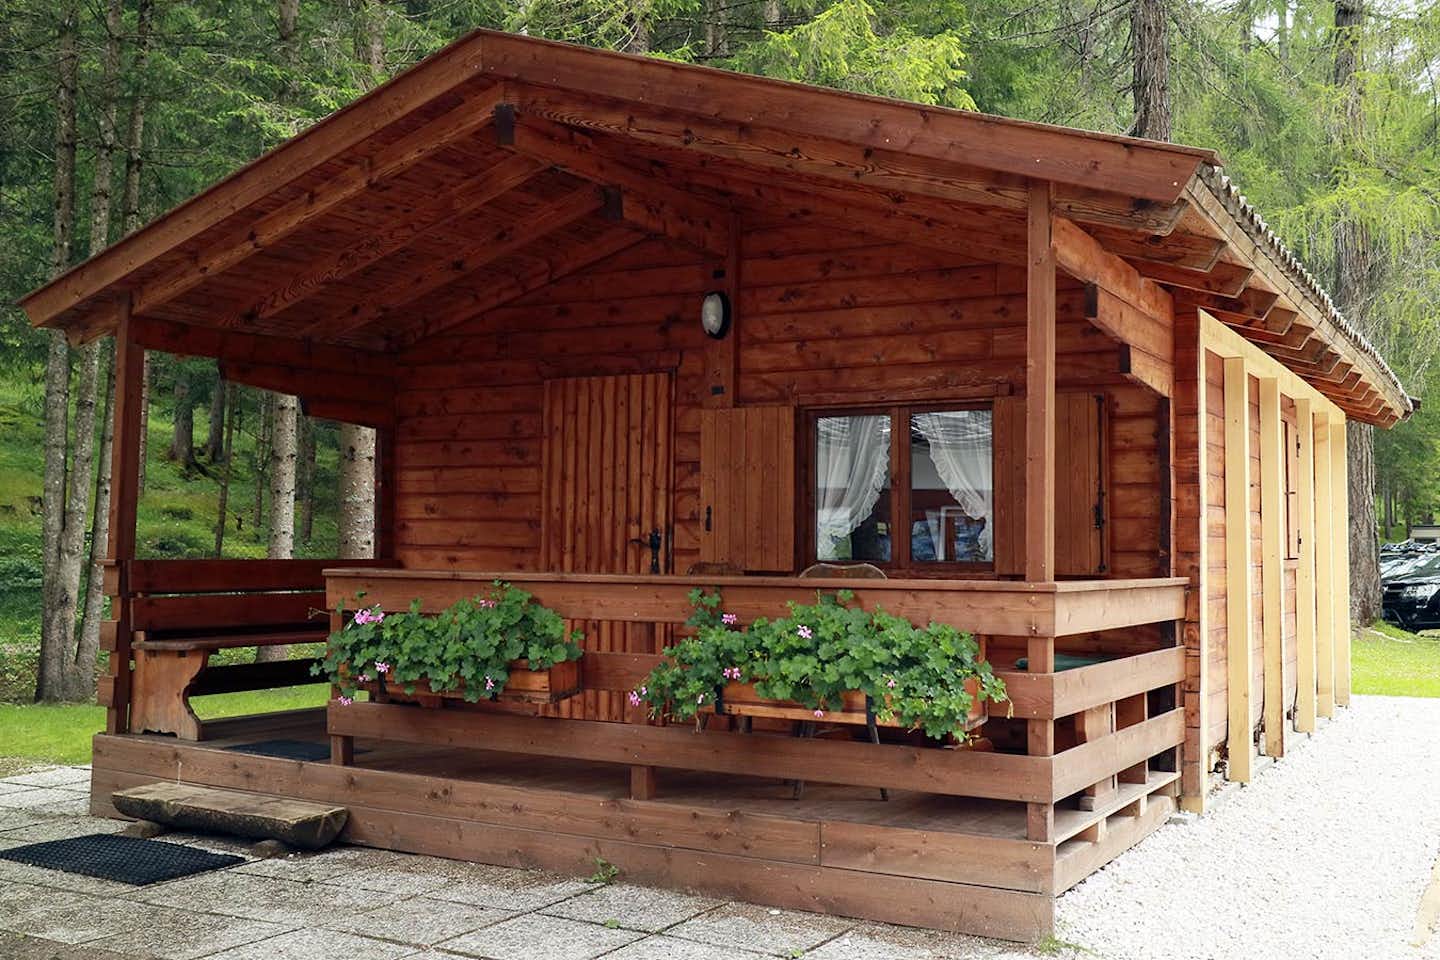 Camping International Olympia - Ferienhütte mit überdachter Veranda